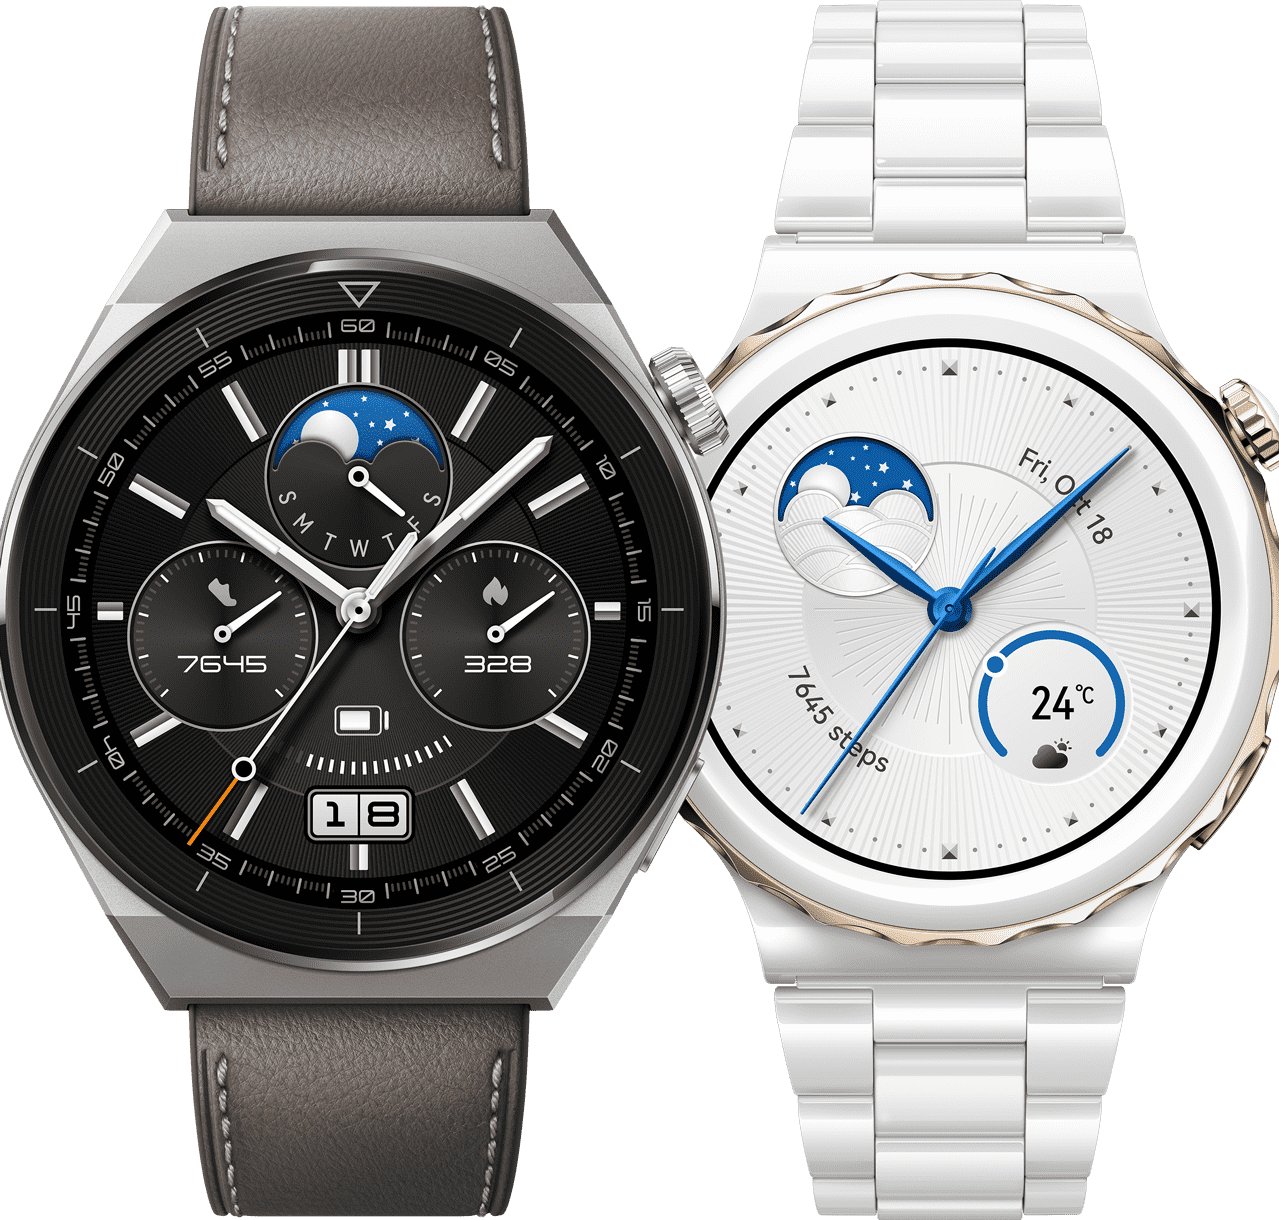 Watch GT 3 Pro se lanza a nivel mundial, el reloj más premium de HUAWEI que llegará a México